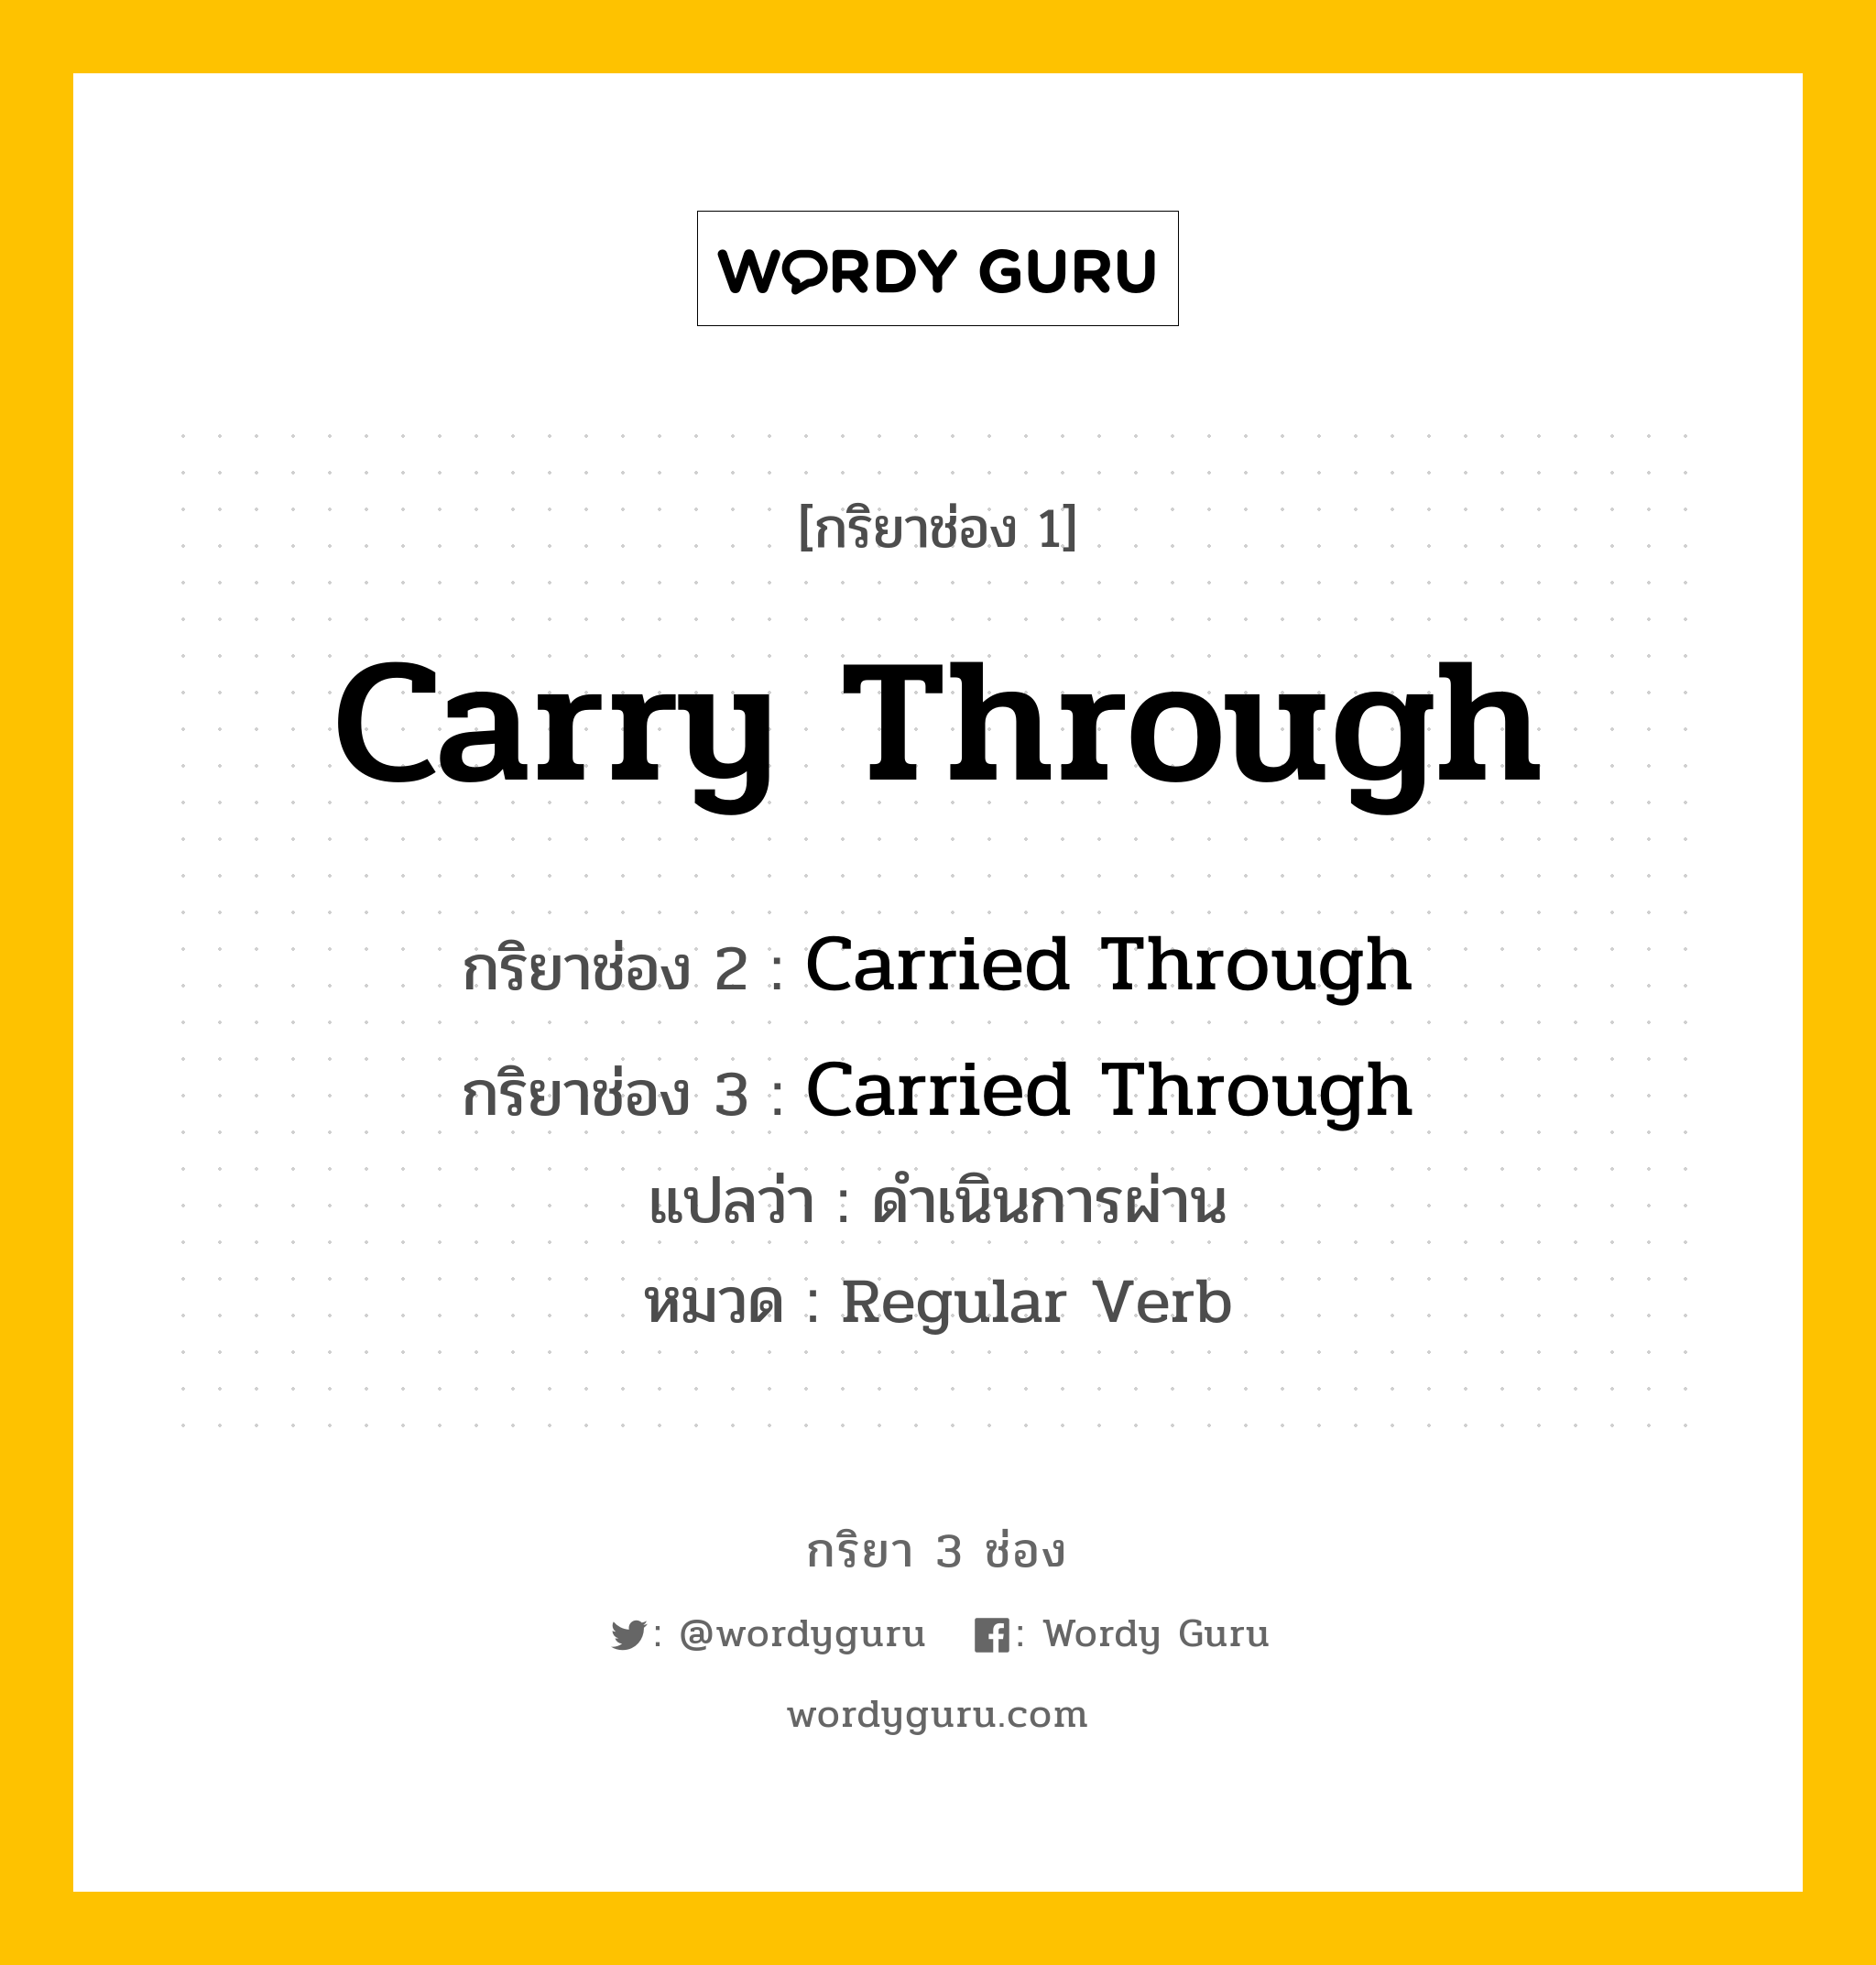 กริยา 3 ช่อง ของ Carry Through คืออะไร? มาดูคำอ่าน คำแปลกันเลย, กริยาช่อง 1 Carry Through กริยาช่อง 2 Carried Through กริยาช่อง 3 Carried Through แปลว่า ดำเนินการผ่าน หมวด Regular Verb หมวด Regular Verb